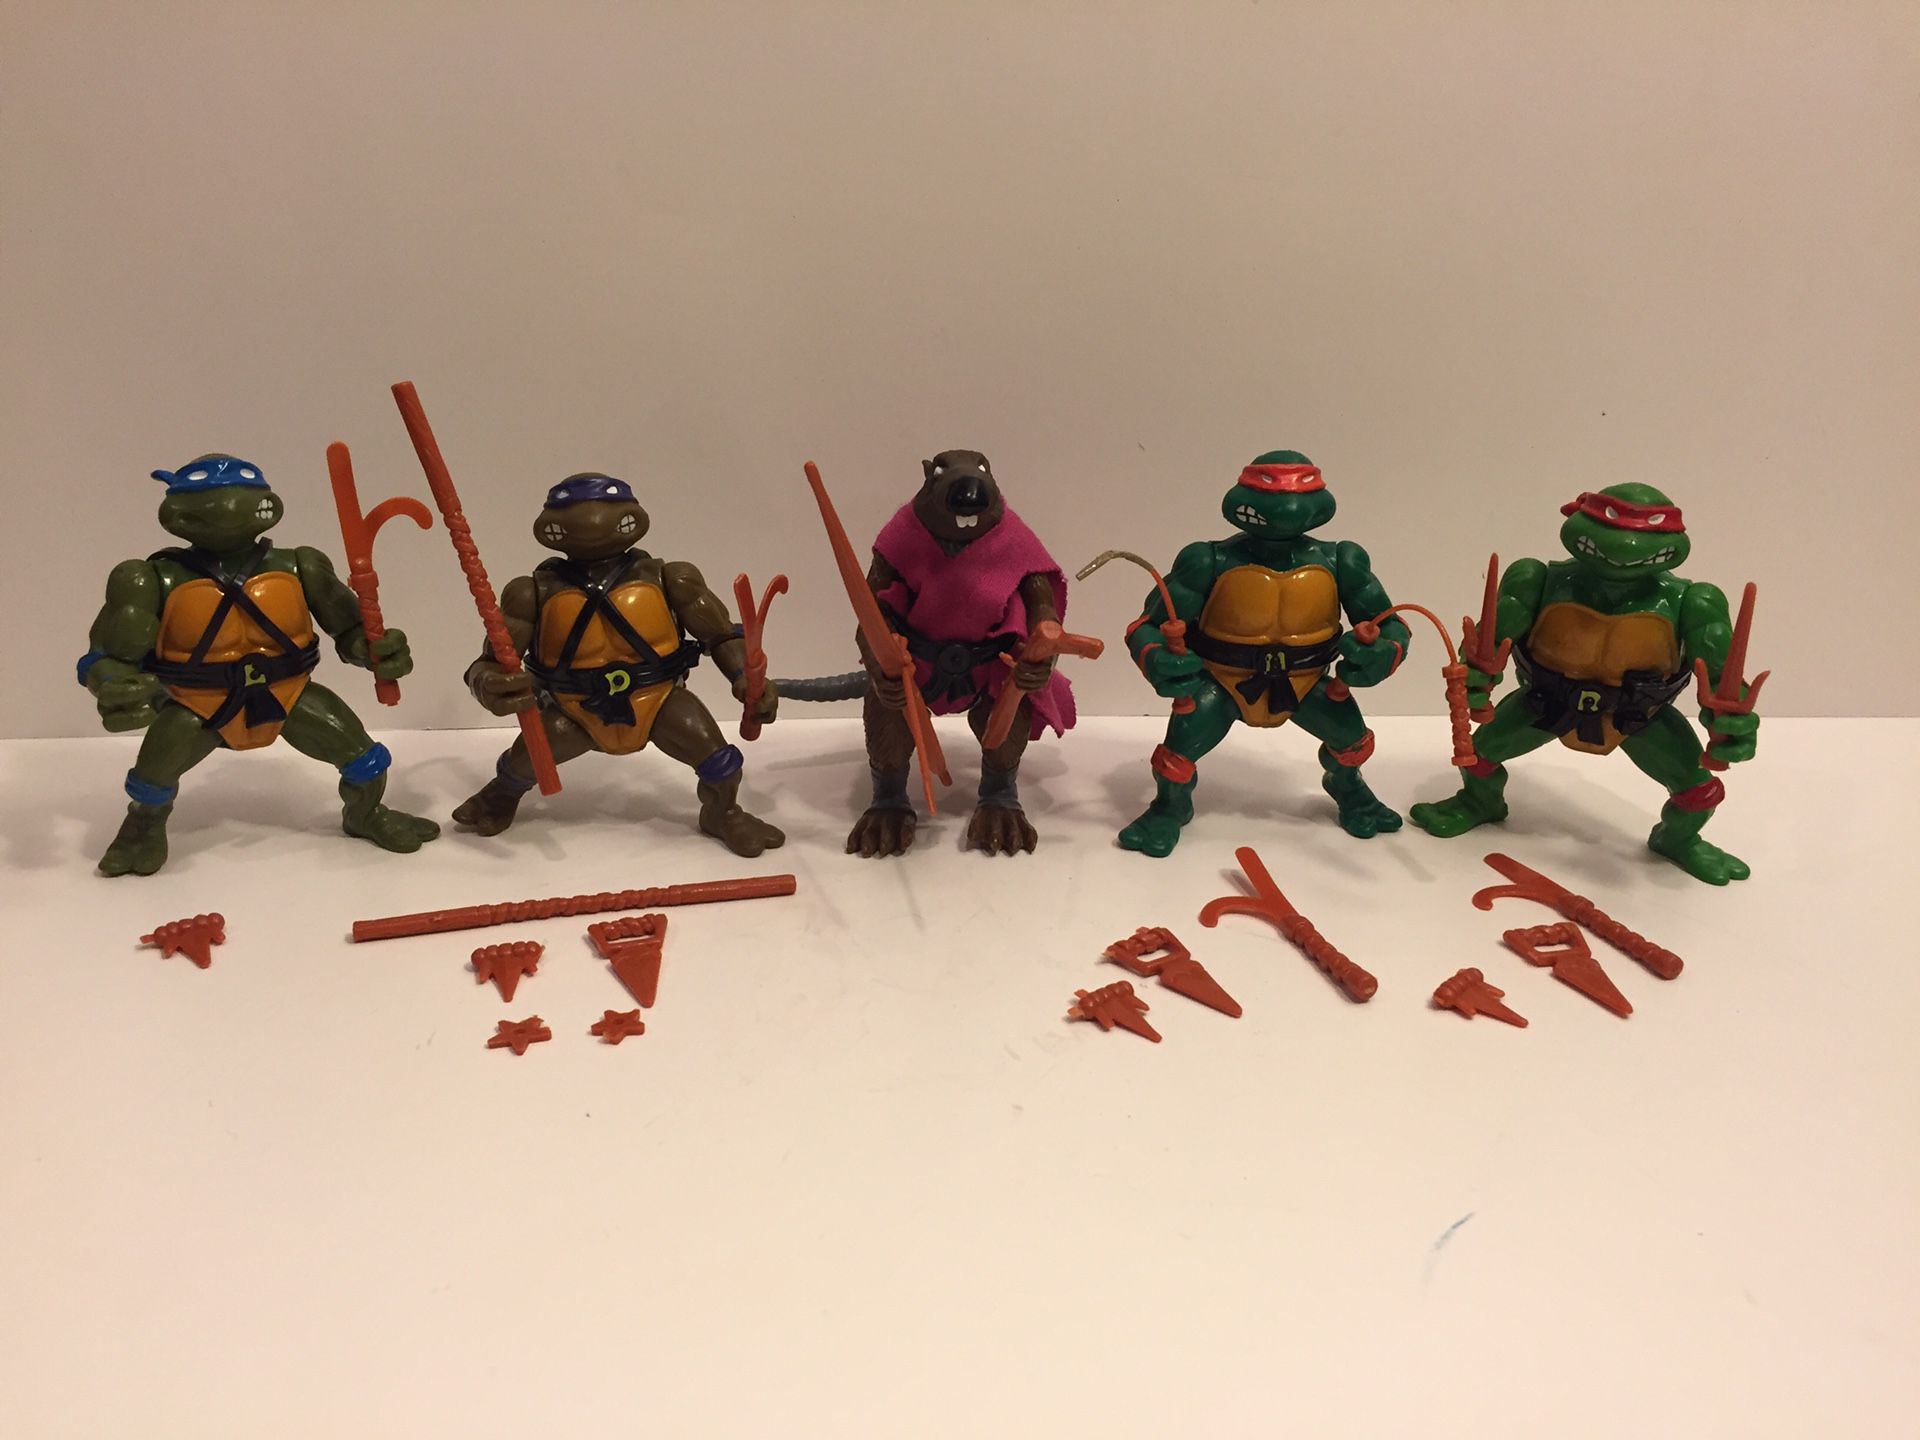 1988 TMNT Turtles Lot - Vintage Action Figure Toy Playmates - Splinter - Teenage Mutant Ninja Turtles